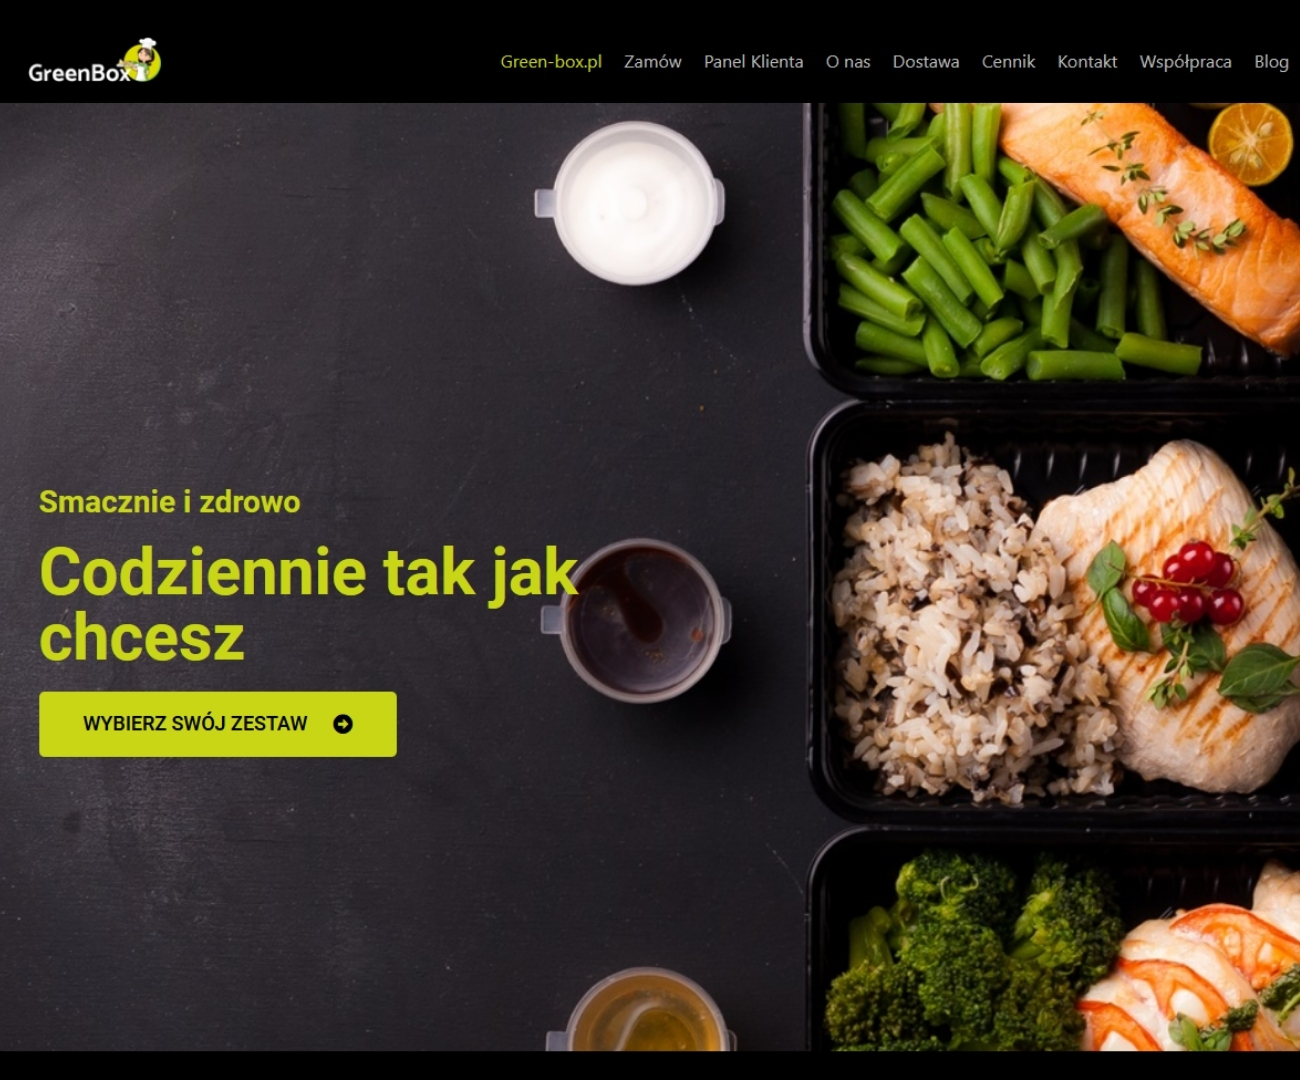 Agencja reklamowa - strona internetowa dla diety pudełkowej GreenBox